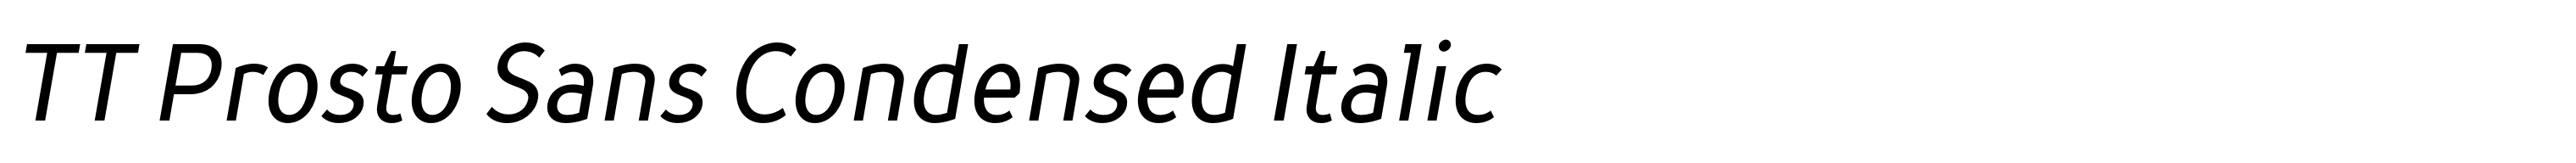 TT Prosto Sans Condensed Italic